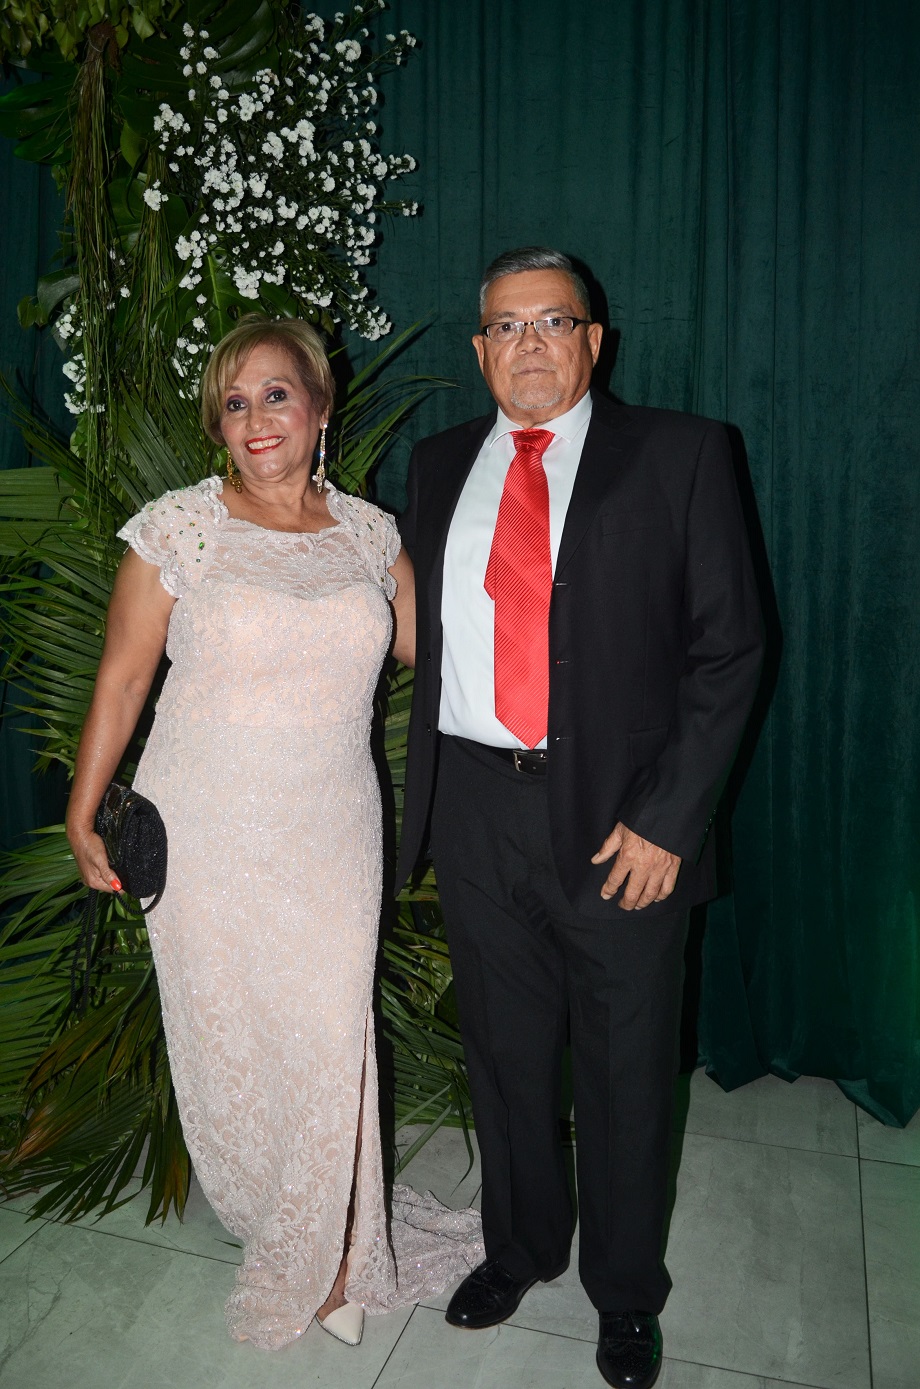 Elegancia y romanticismo en la boda Luis Diego Ortez y Stephanie Ewens